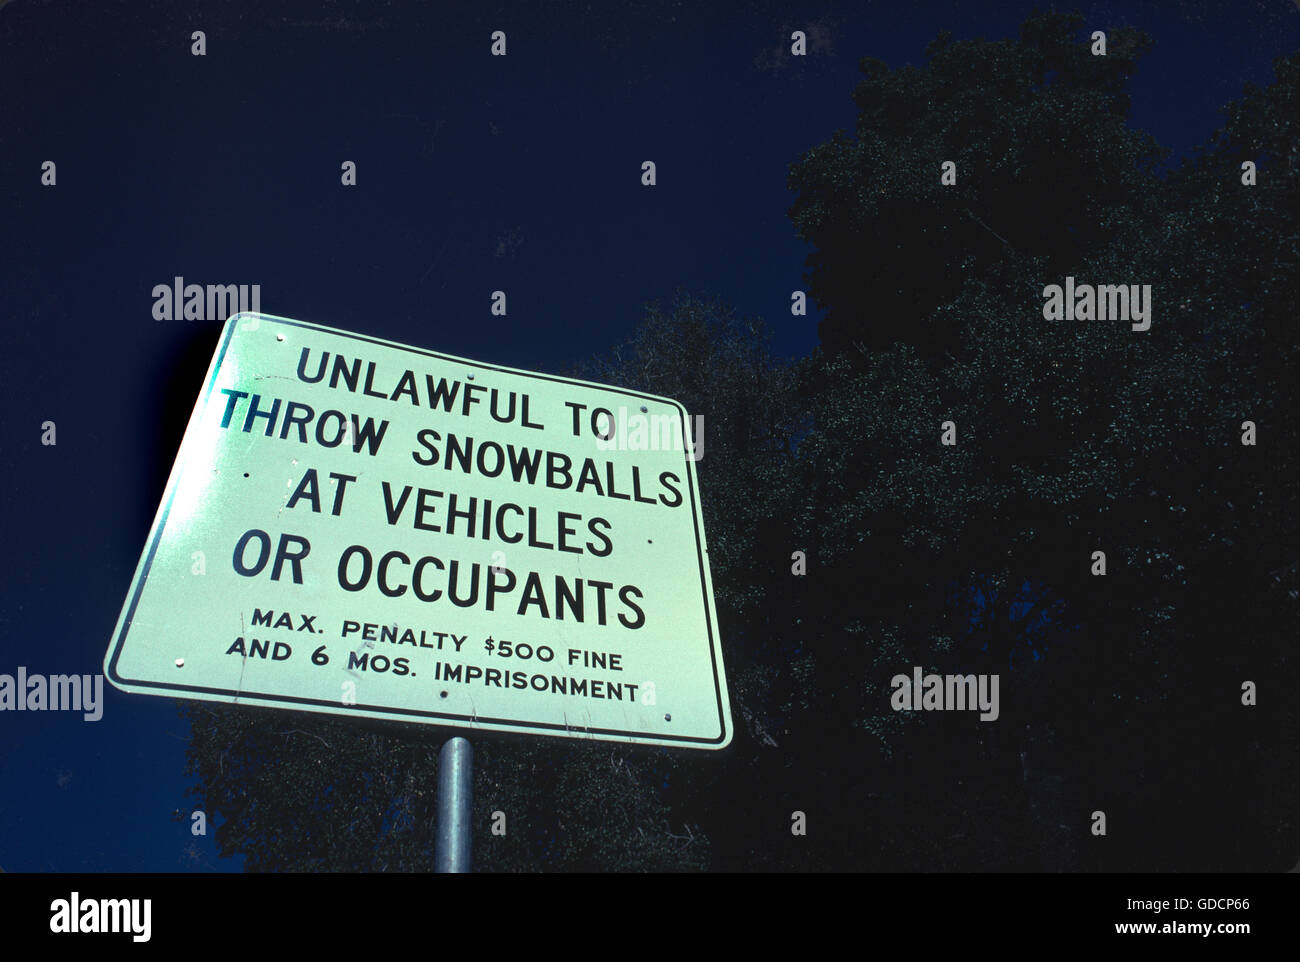 Sérieux, mais trop d'humour, panneau près du Palomar Mountain, dans le comté de San Diego, California USA - illégal de jeter les boules de neige sur des véhicules ou les occupants Banque D'Images